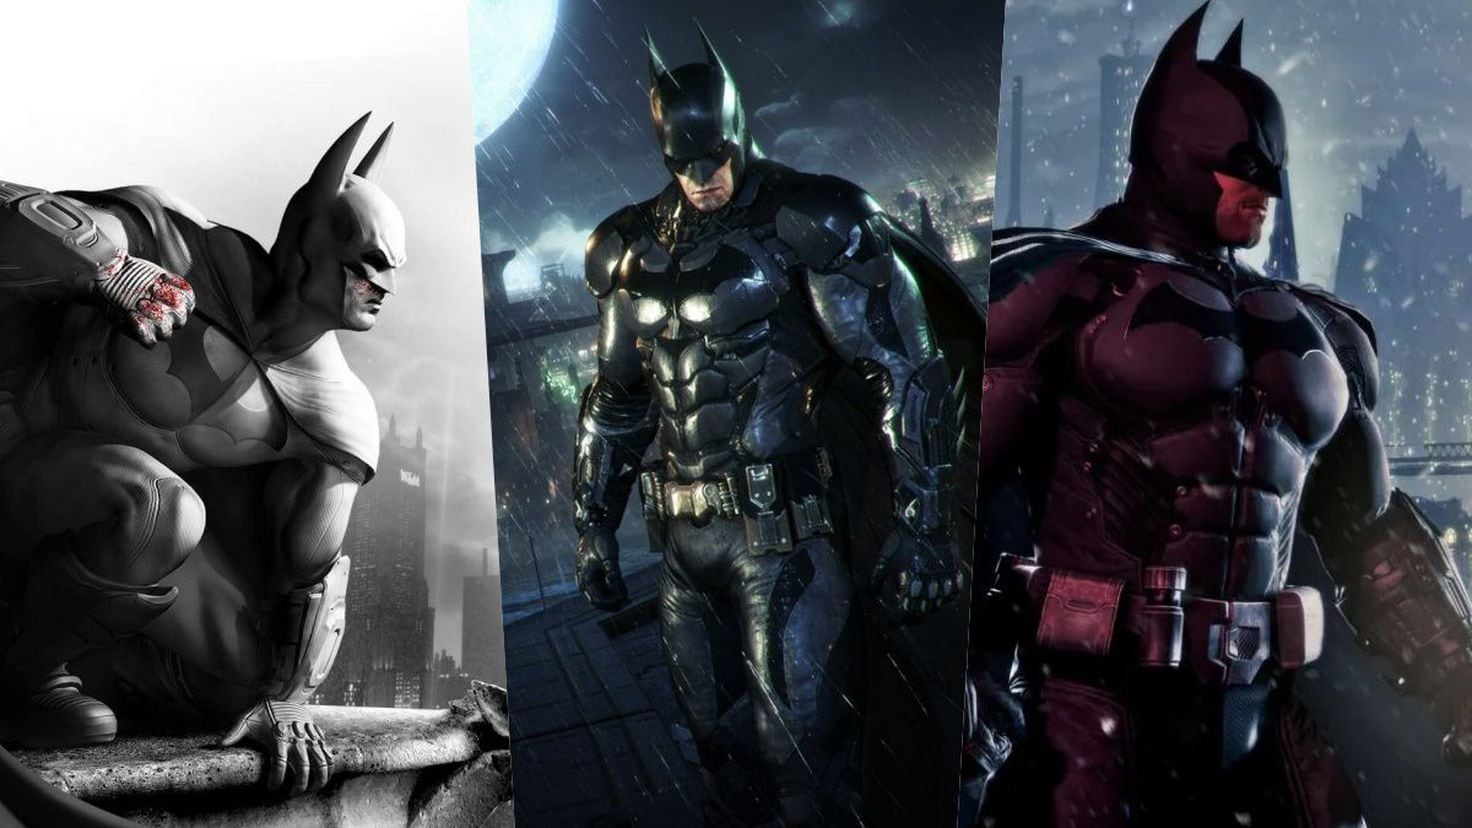 Batman: Arkham Trilogy  Tráiler oficial del lanzamiento de Nintendo Switch  